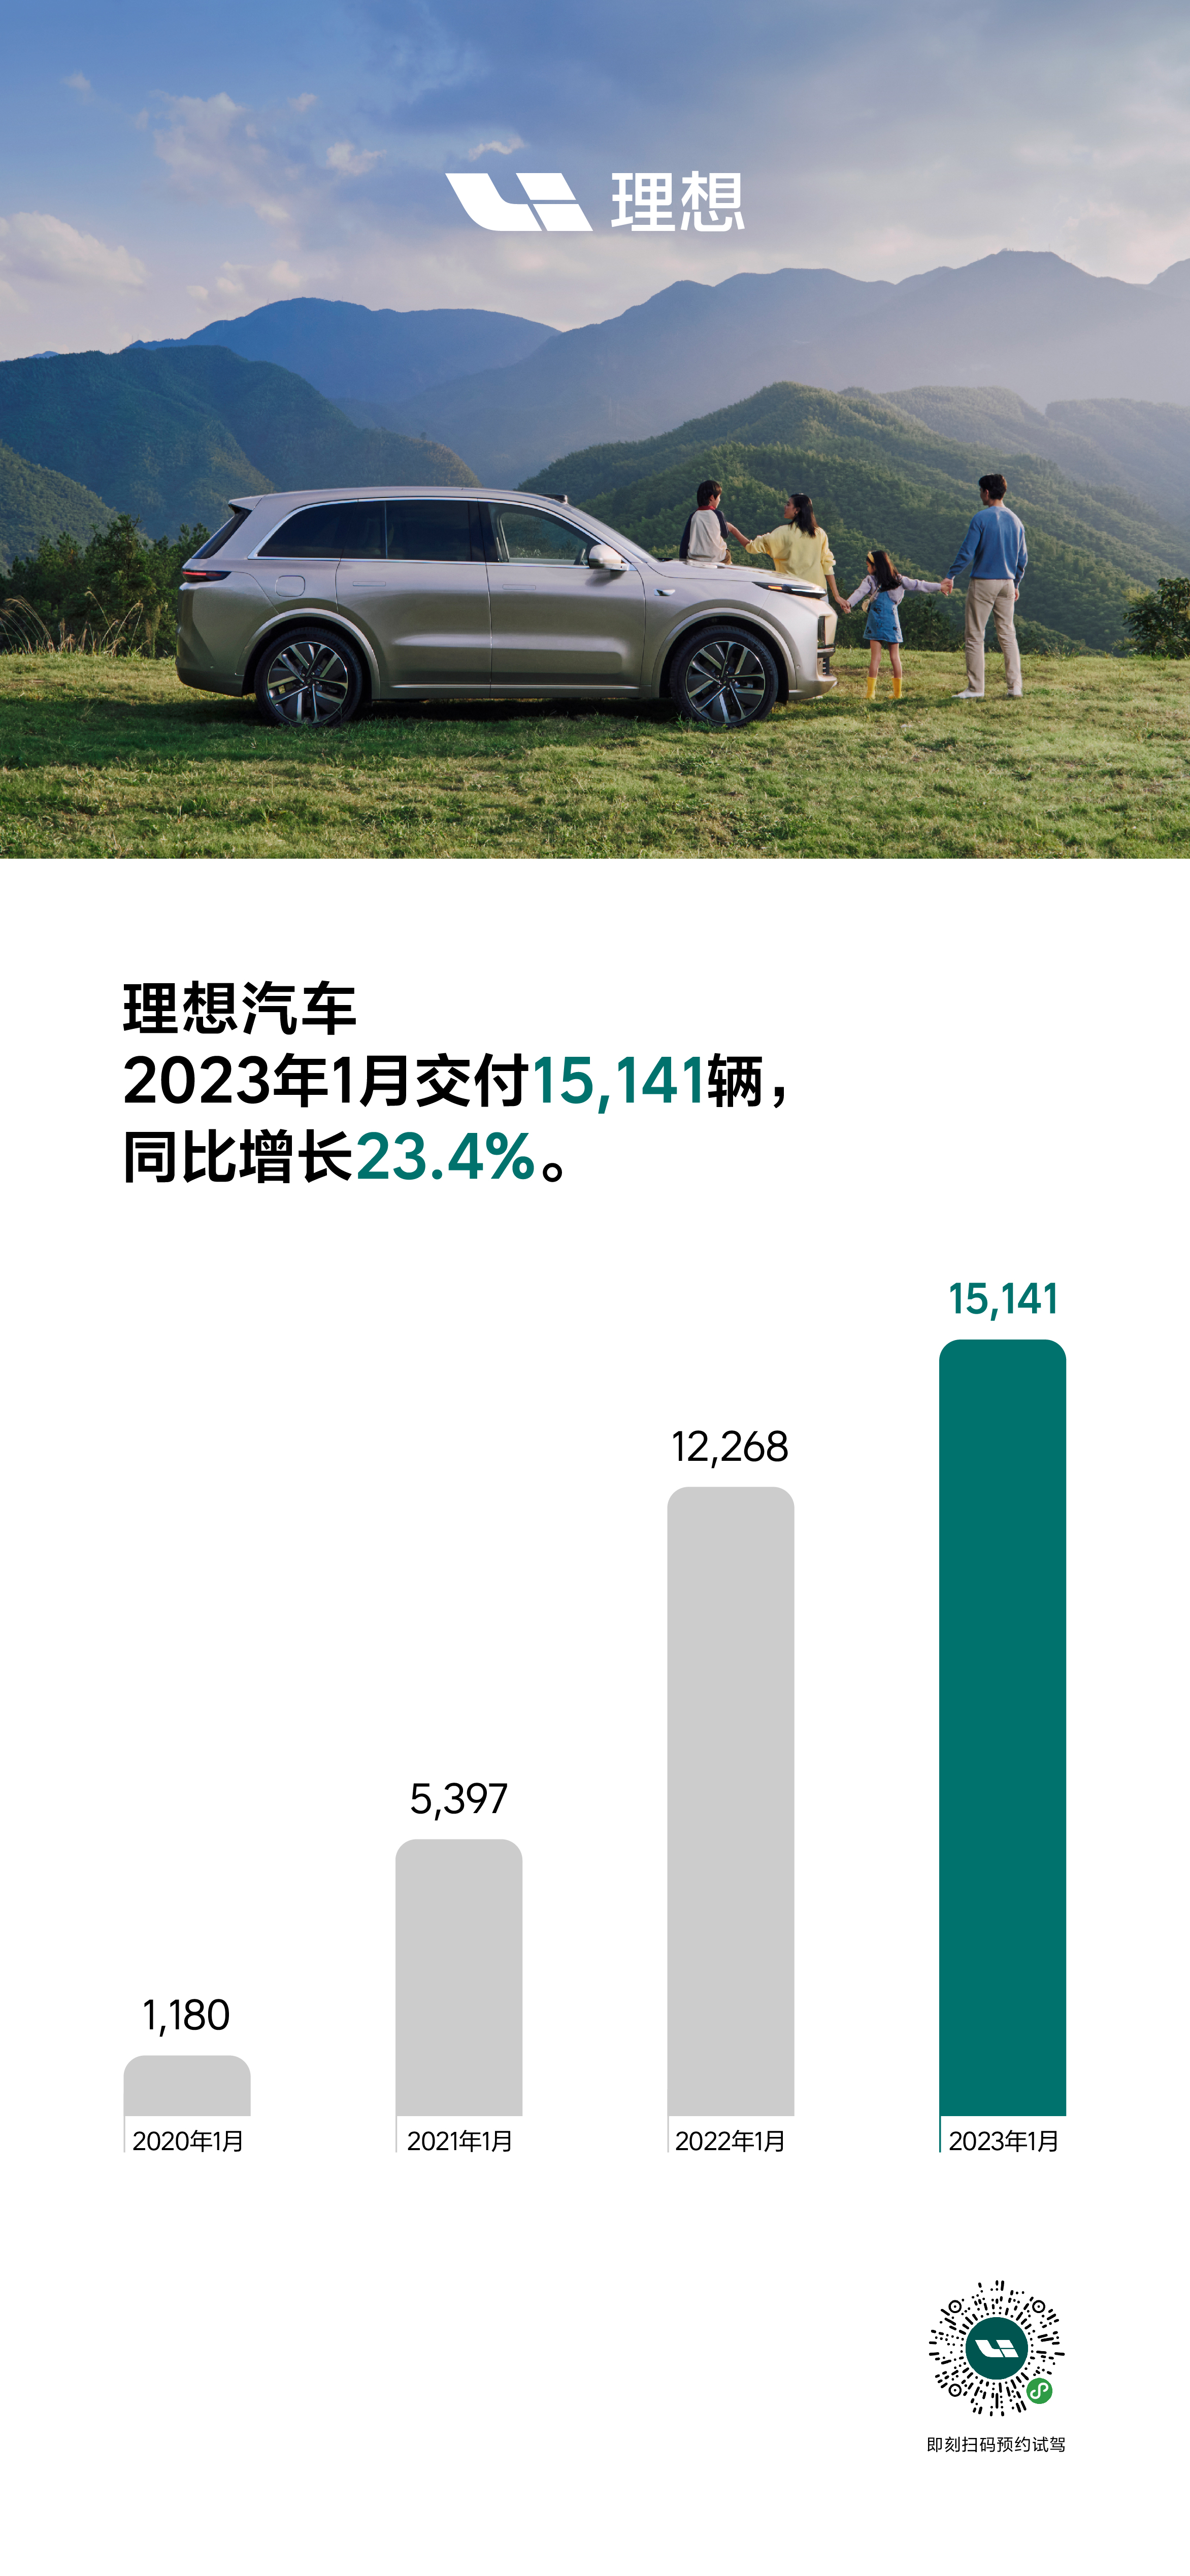 理想汽车2023年1月交付15,141辆 理想L7即将正式发布.jpg